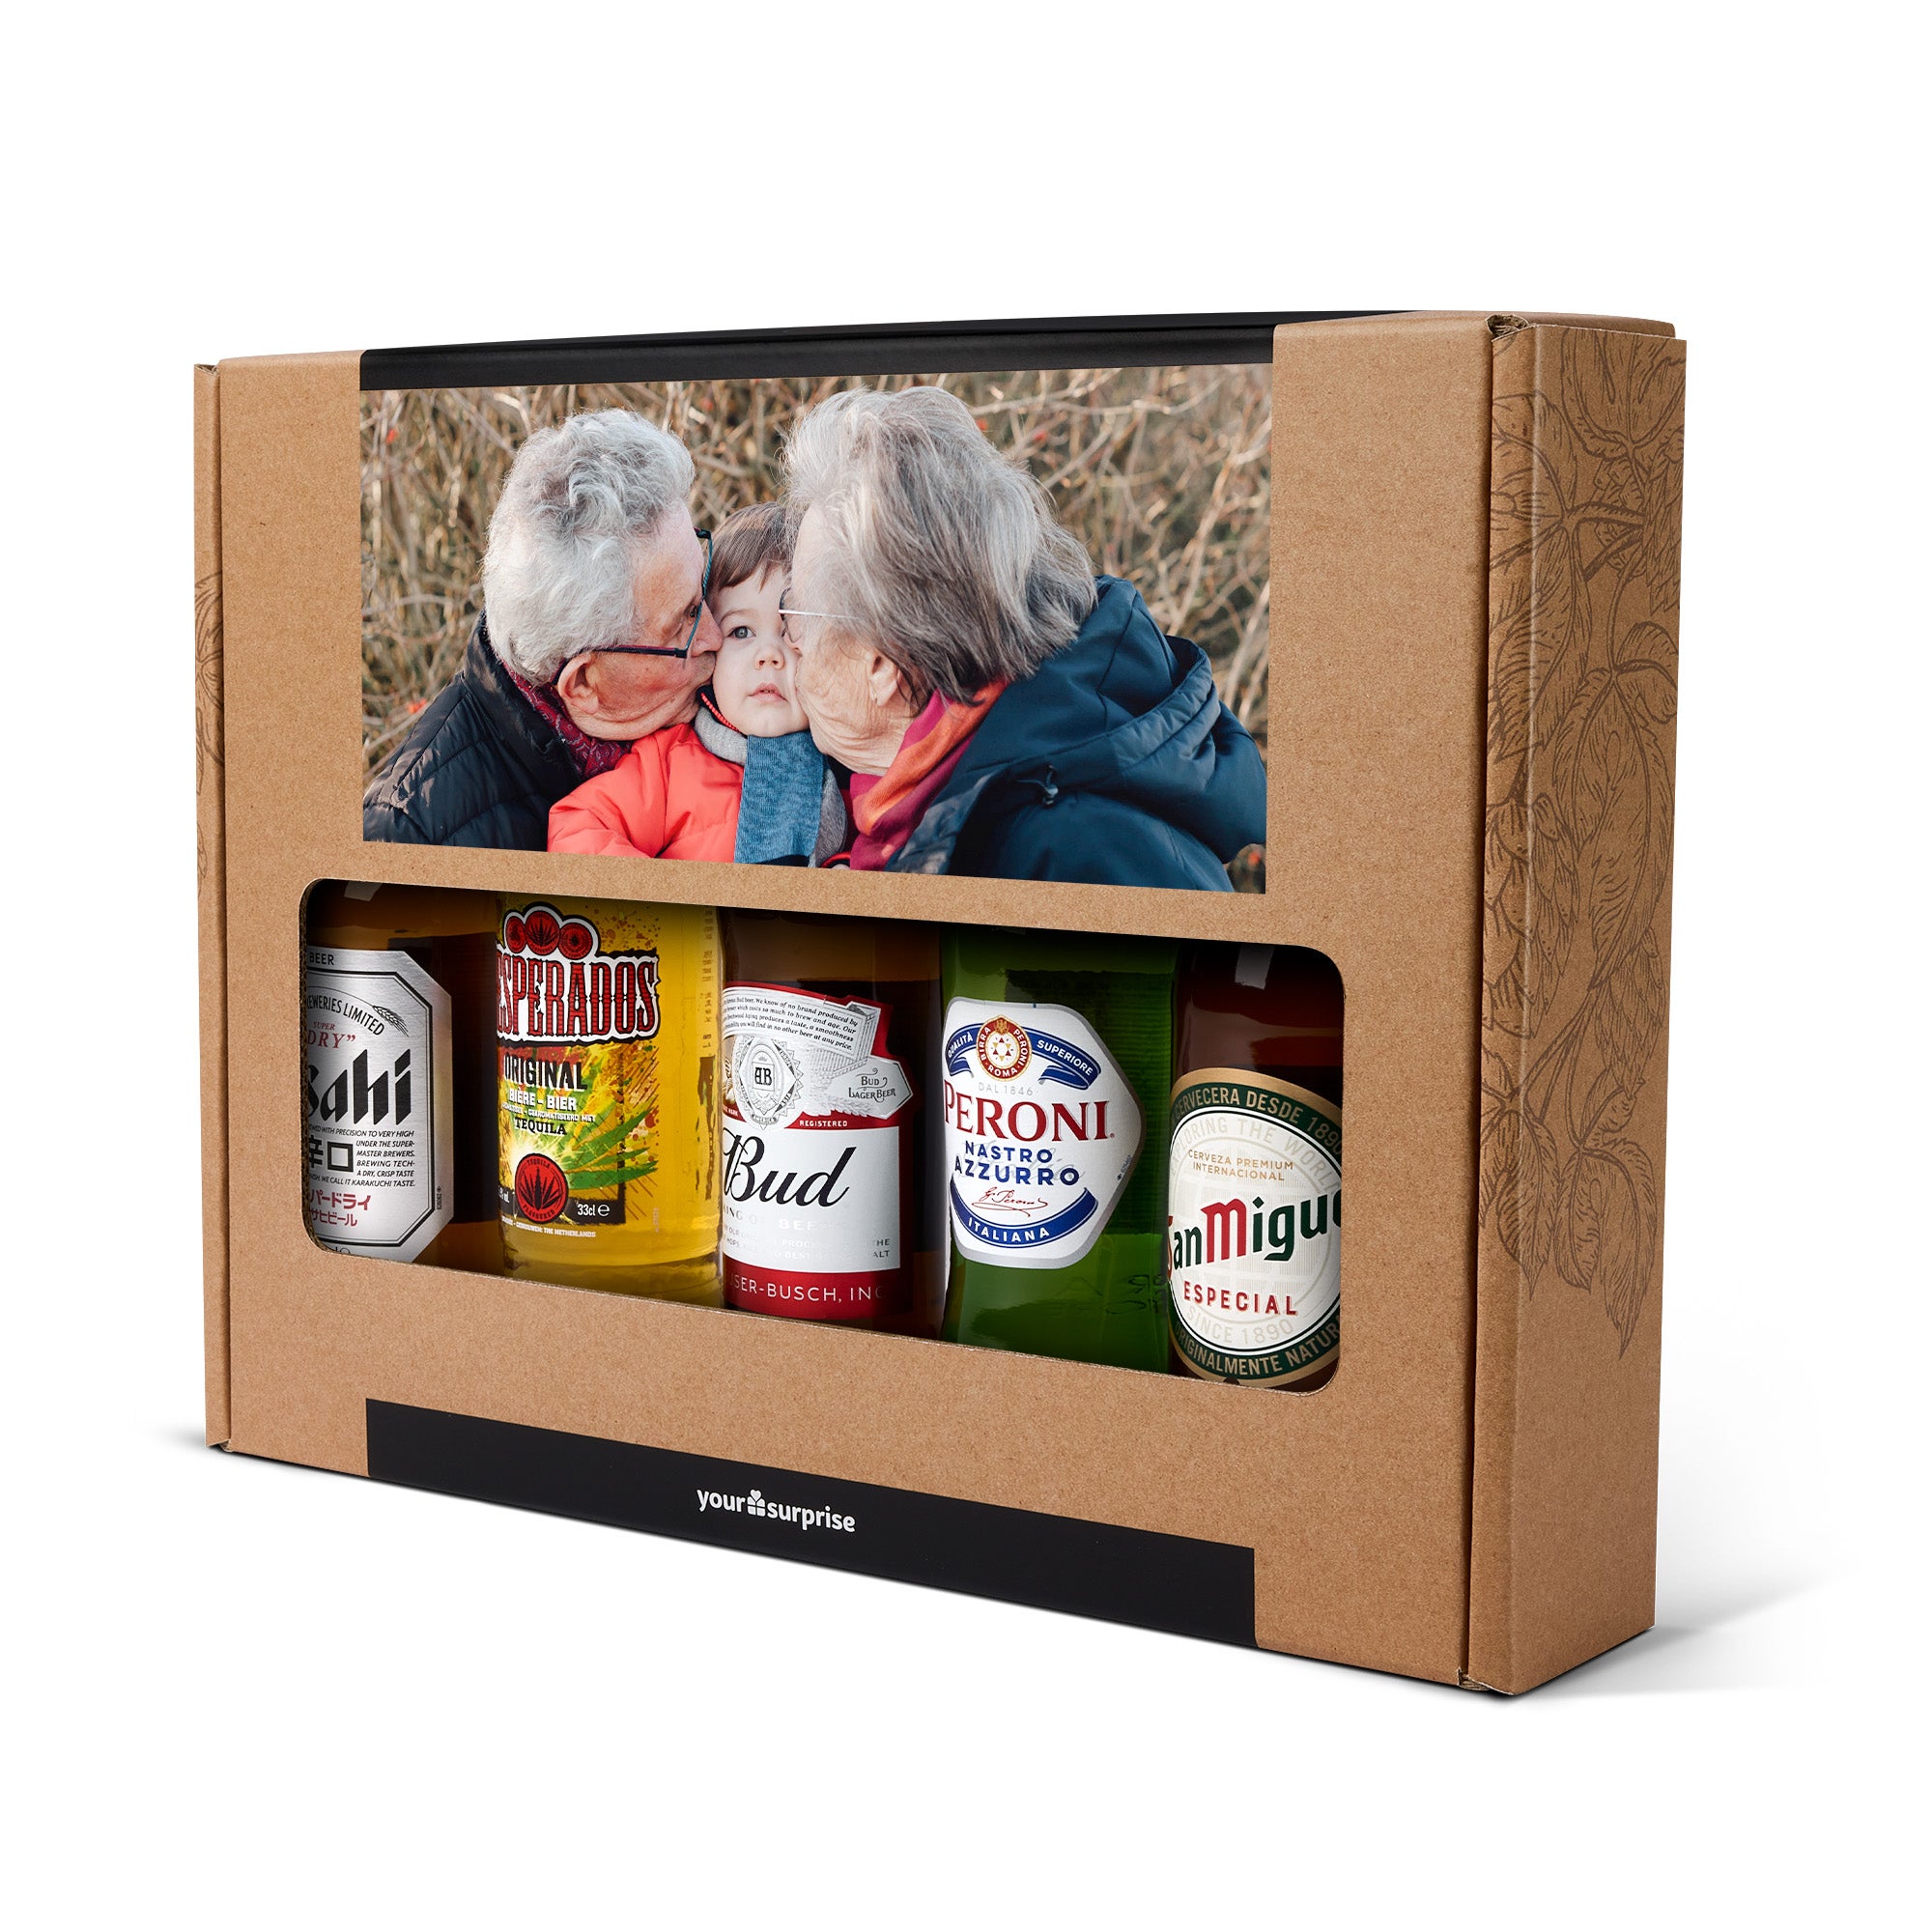 Individuellleckereien - Personalisiertes Bier Geschenkset Internationale Biere Opa - Onlineshop YourSurprise